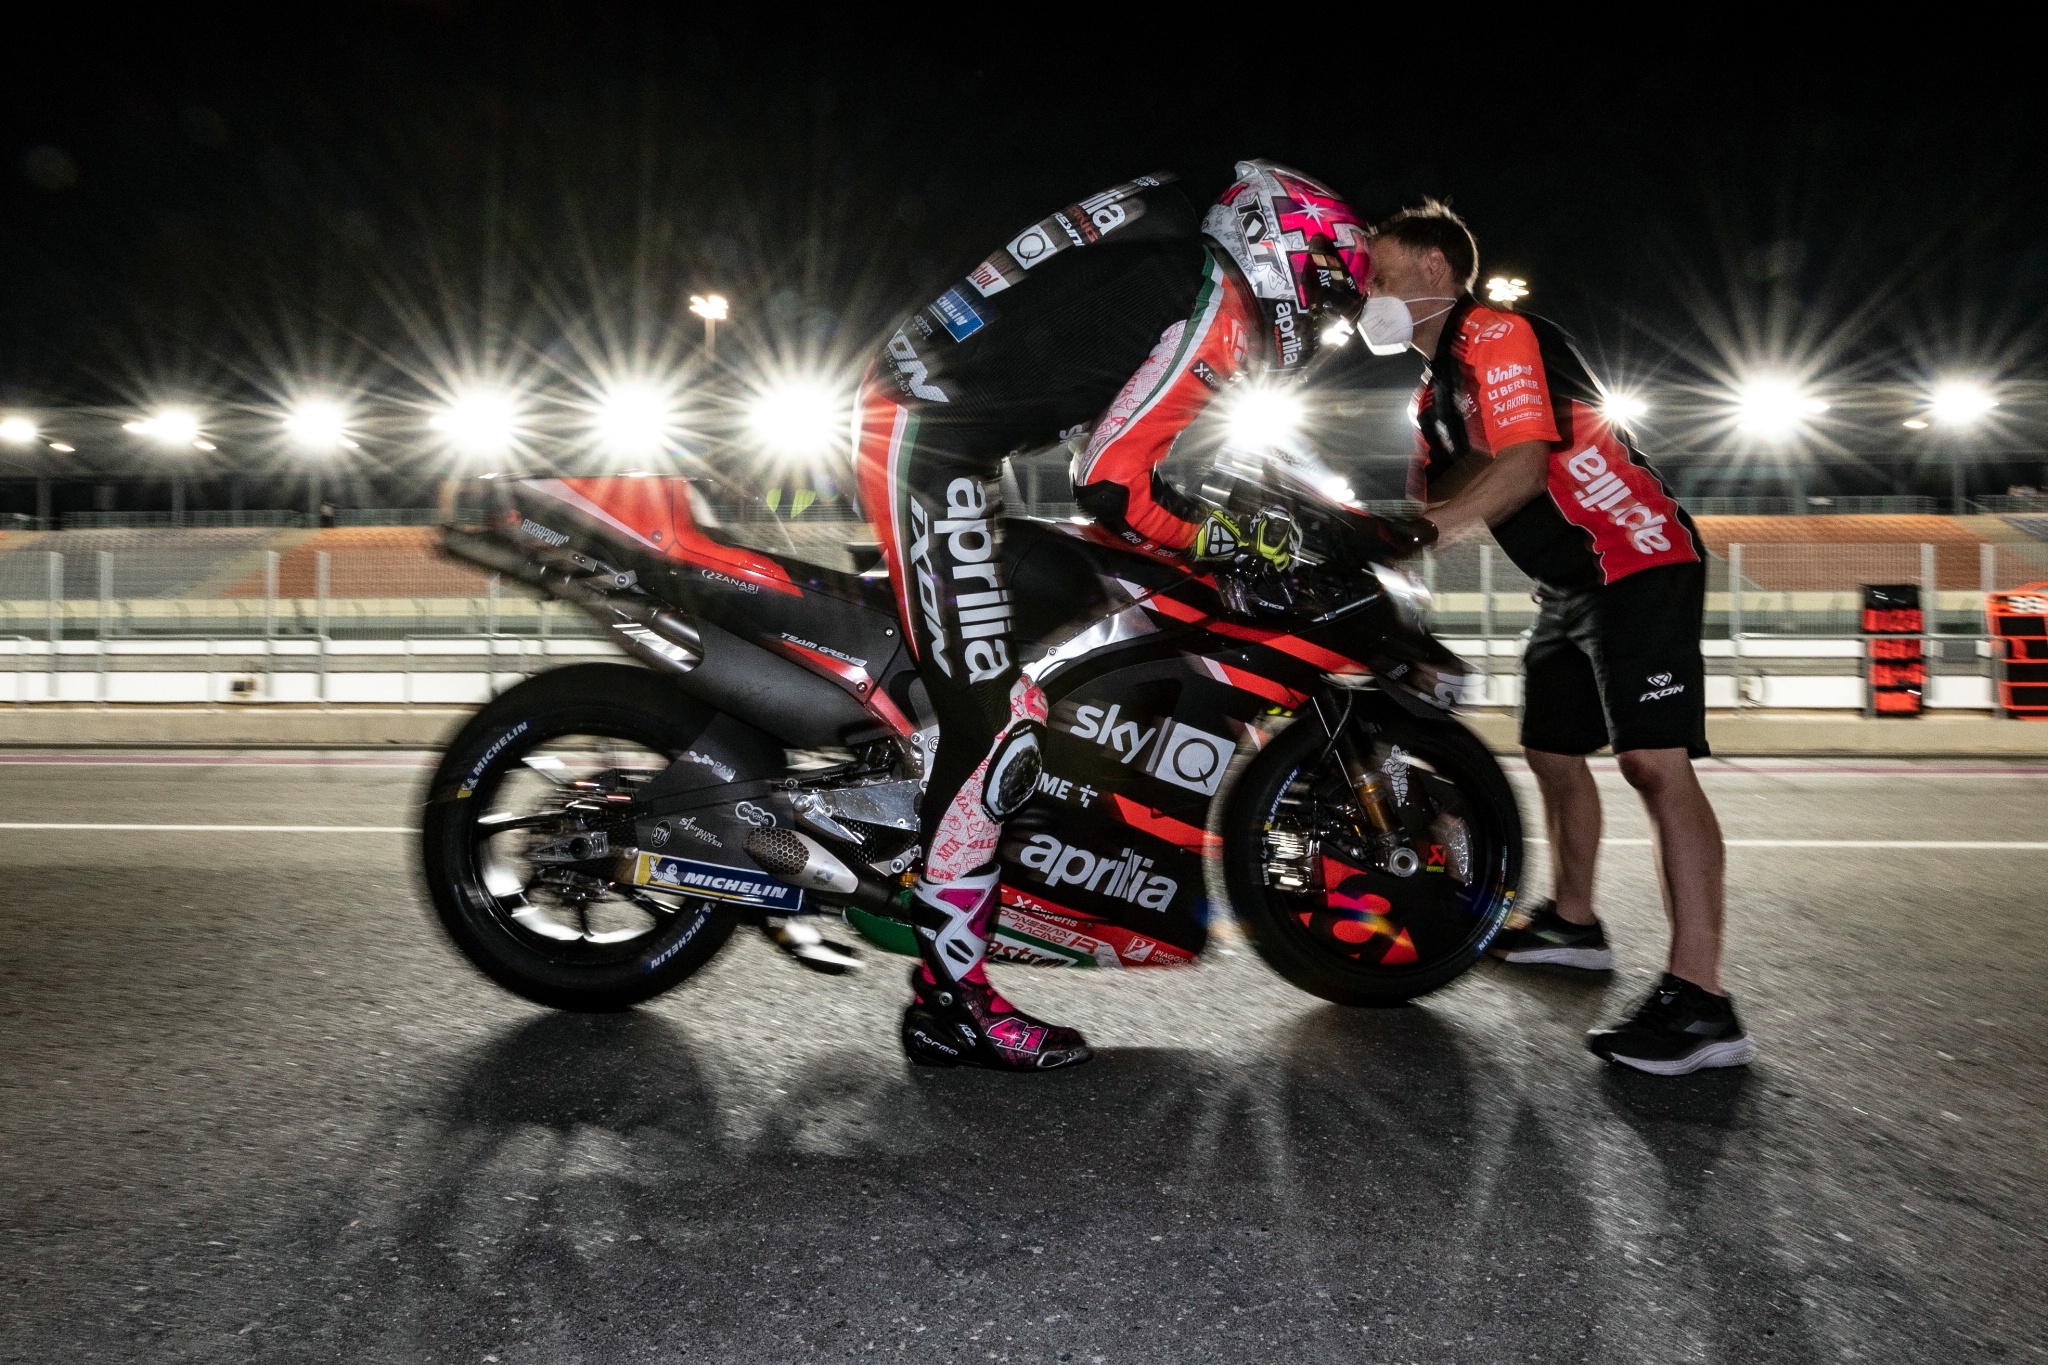 Aleix Espargaro, Qatar MotoGP test, 11 March 2021